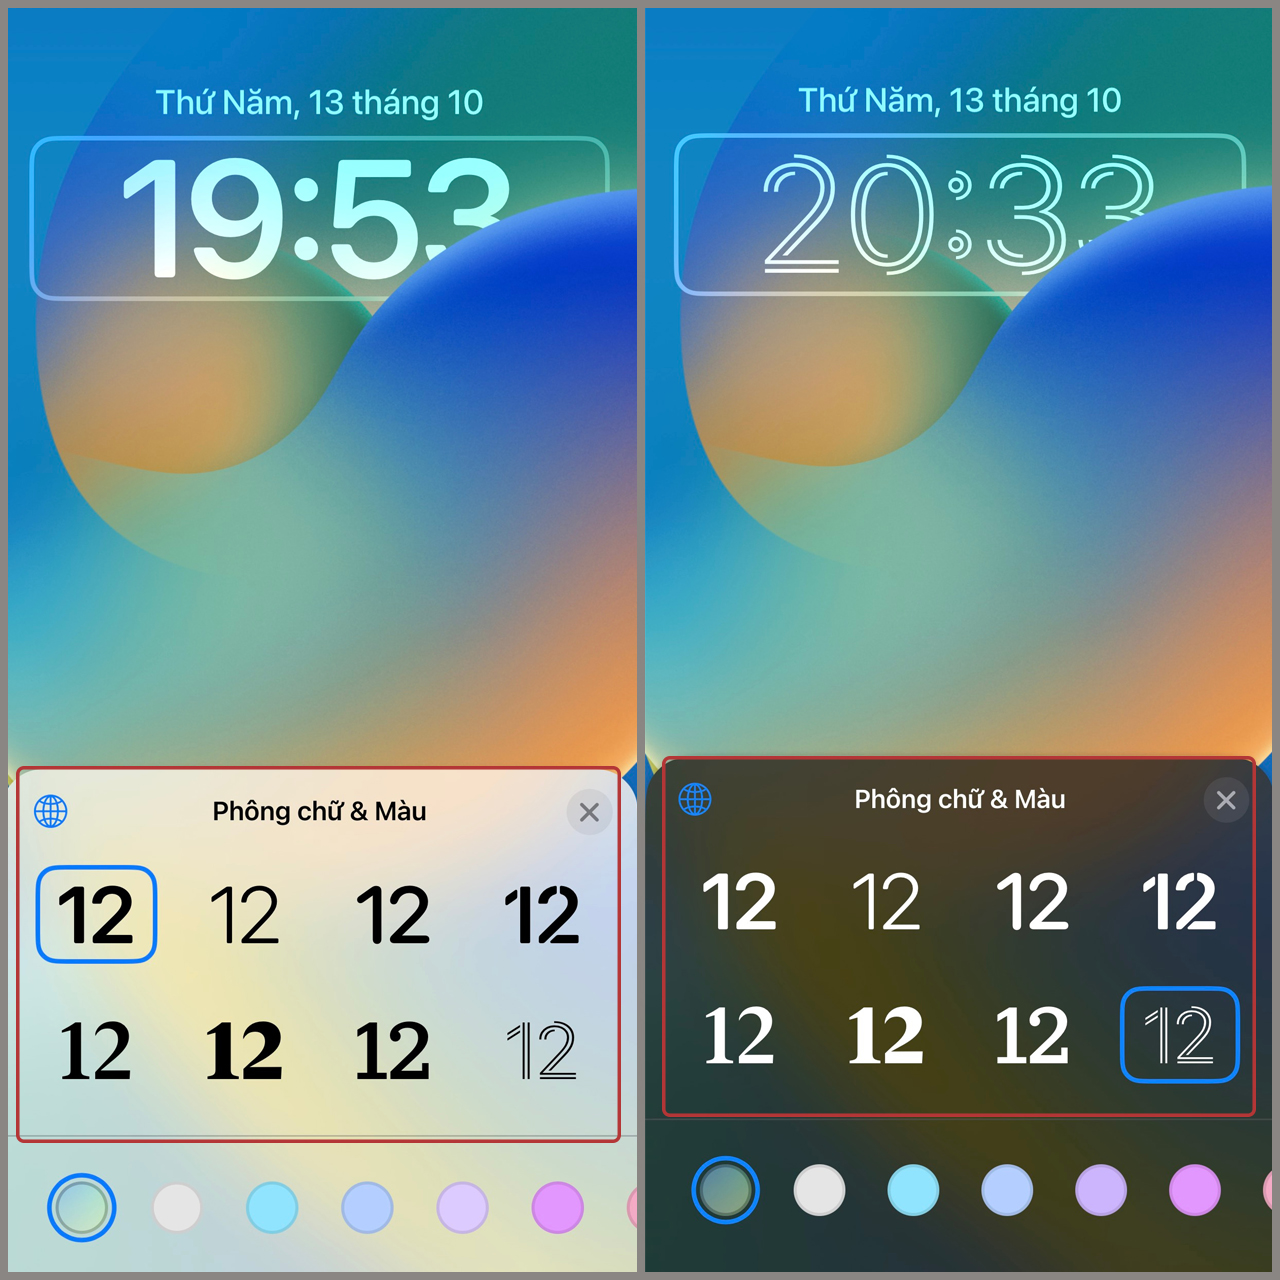 Đổi kiểu dáng đồng hồ trên iOS 16 để hình khoá iPhone lạ mắt hơn   Fptshopcomvn